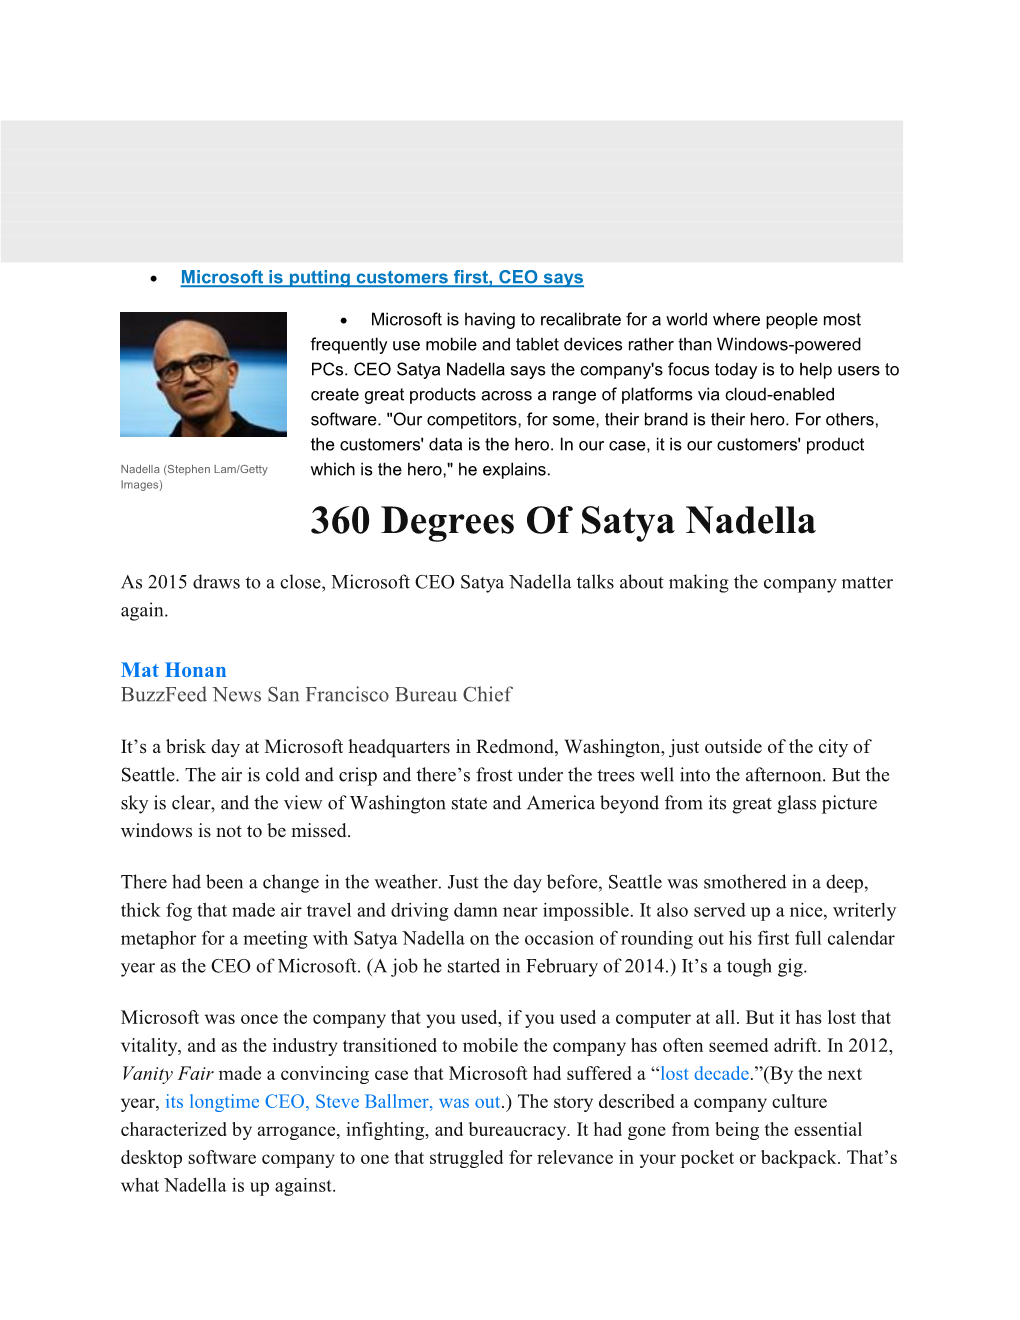 360 Degrees of Satya Nadella